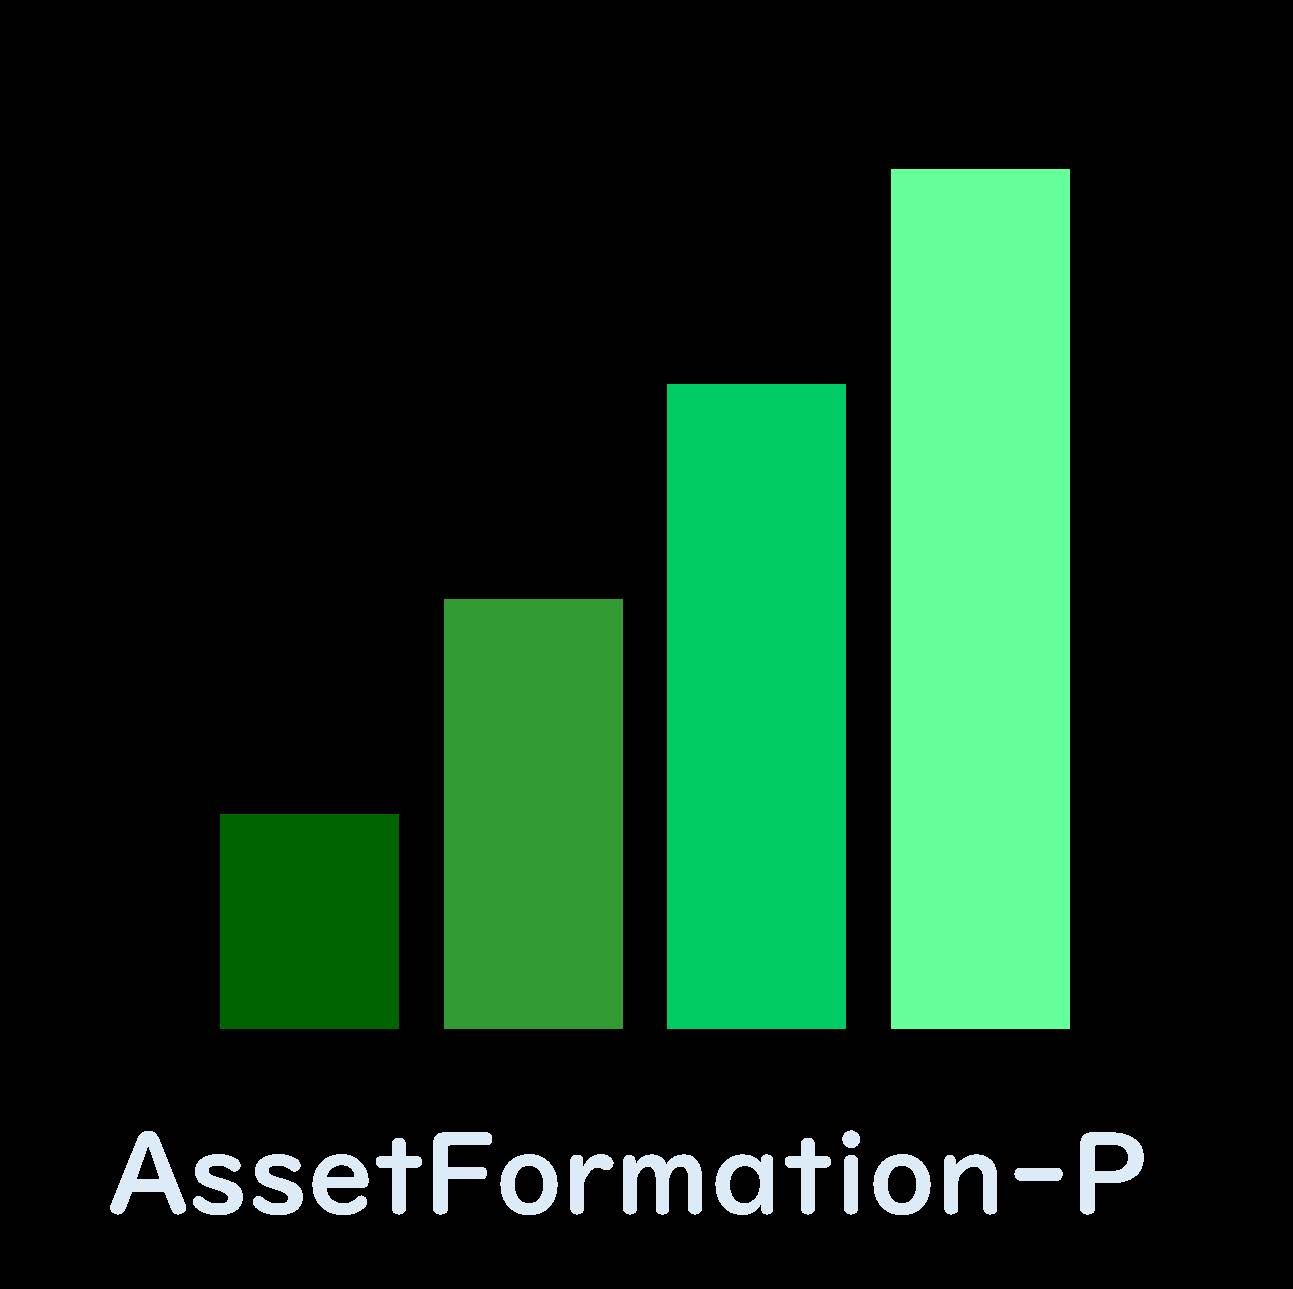 AssetFormation-P 自動売買